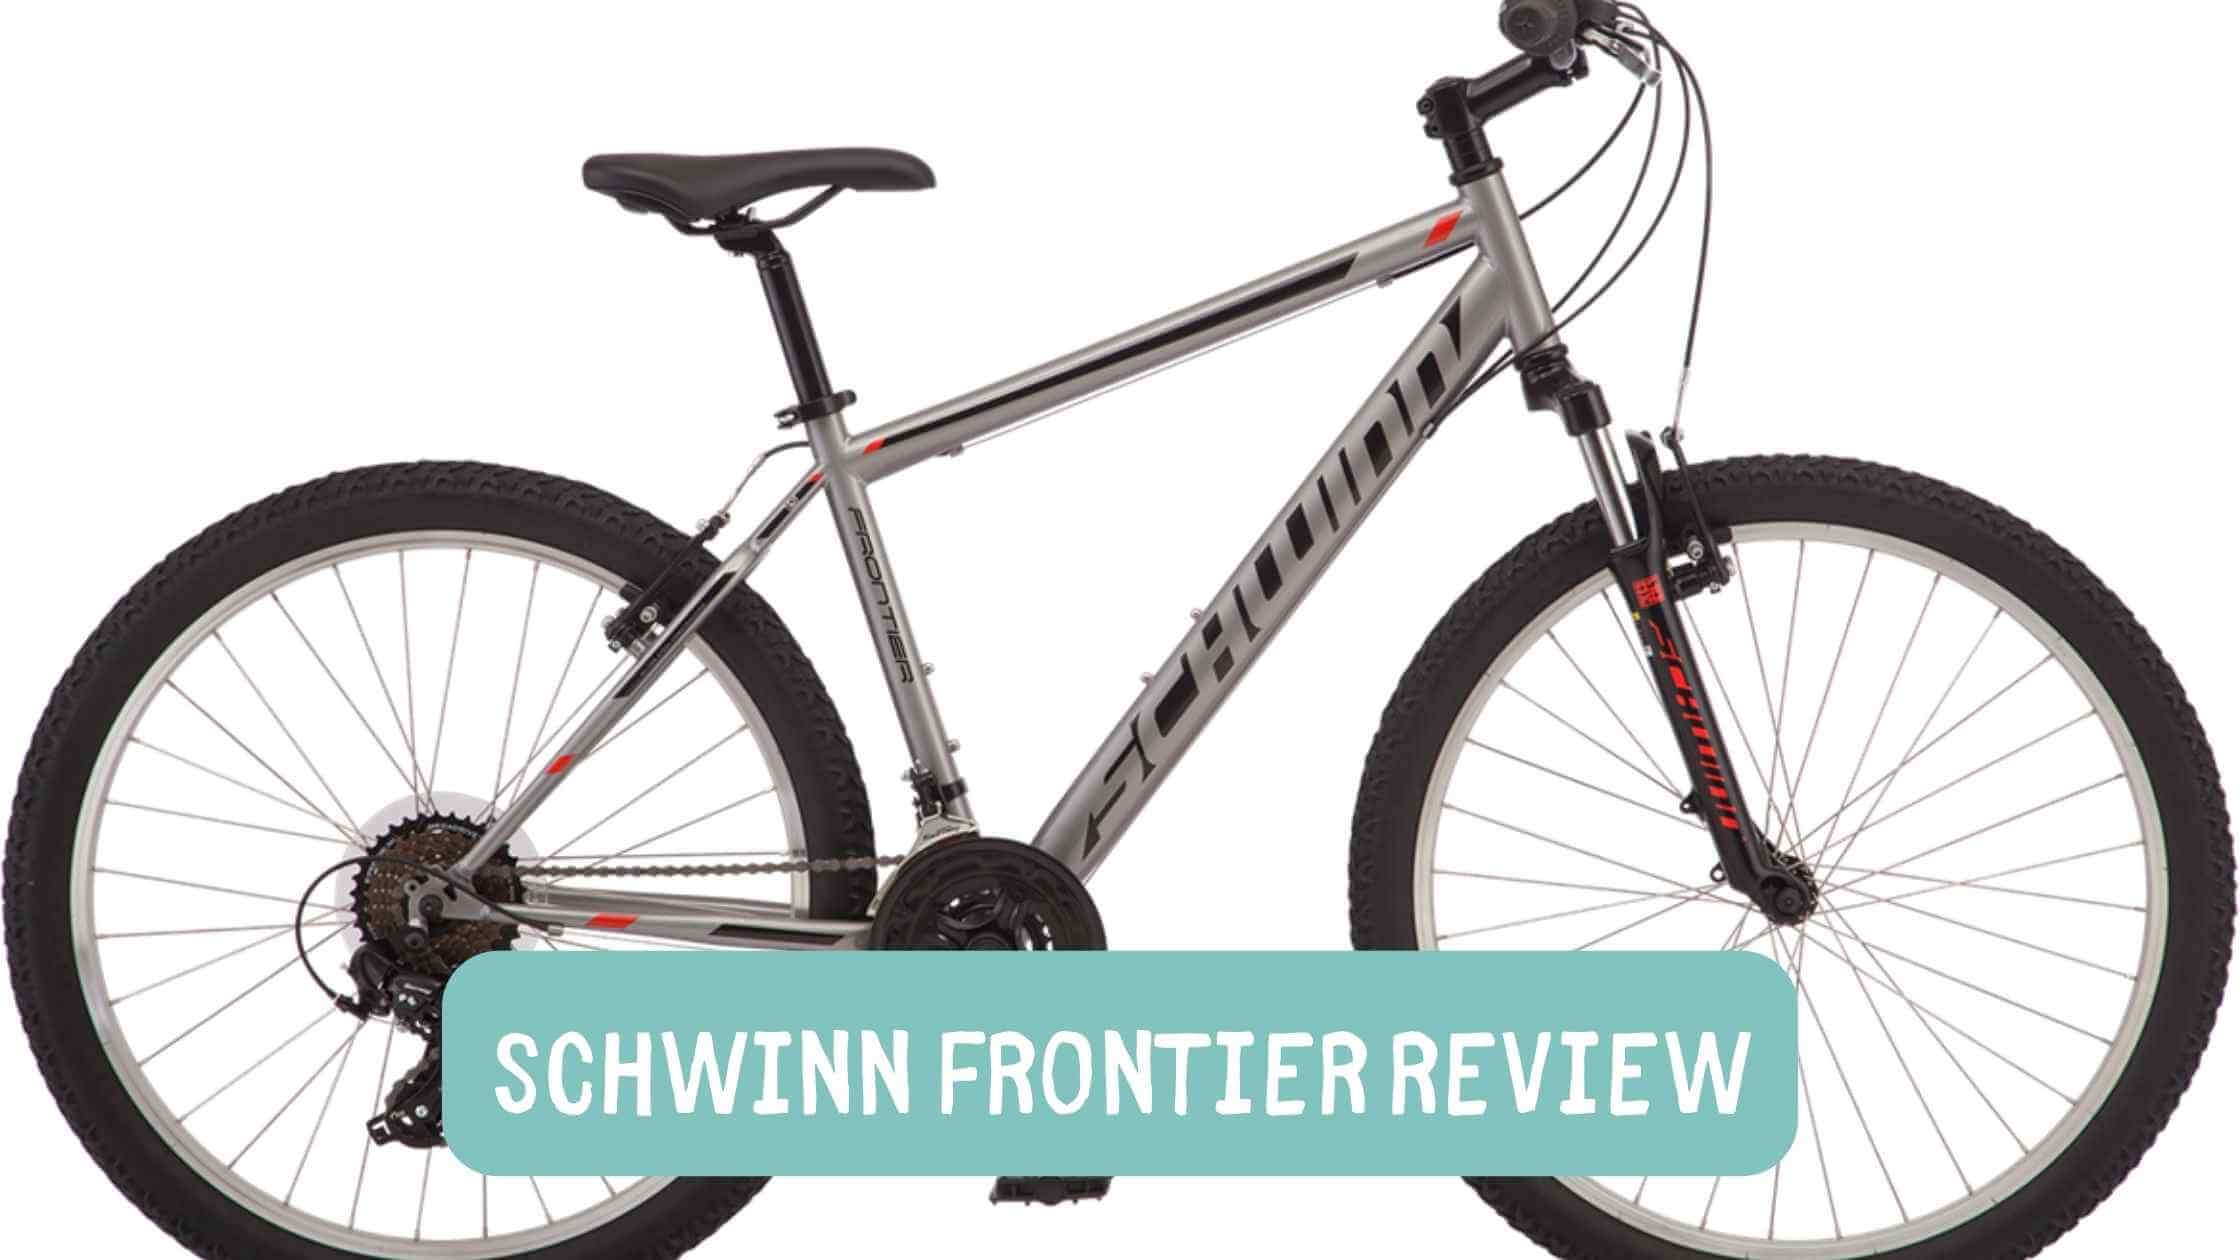 Schwinn Frontier review